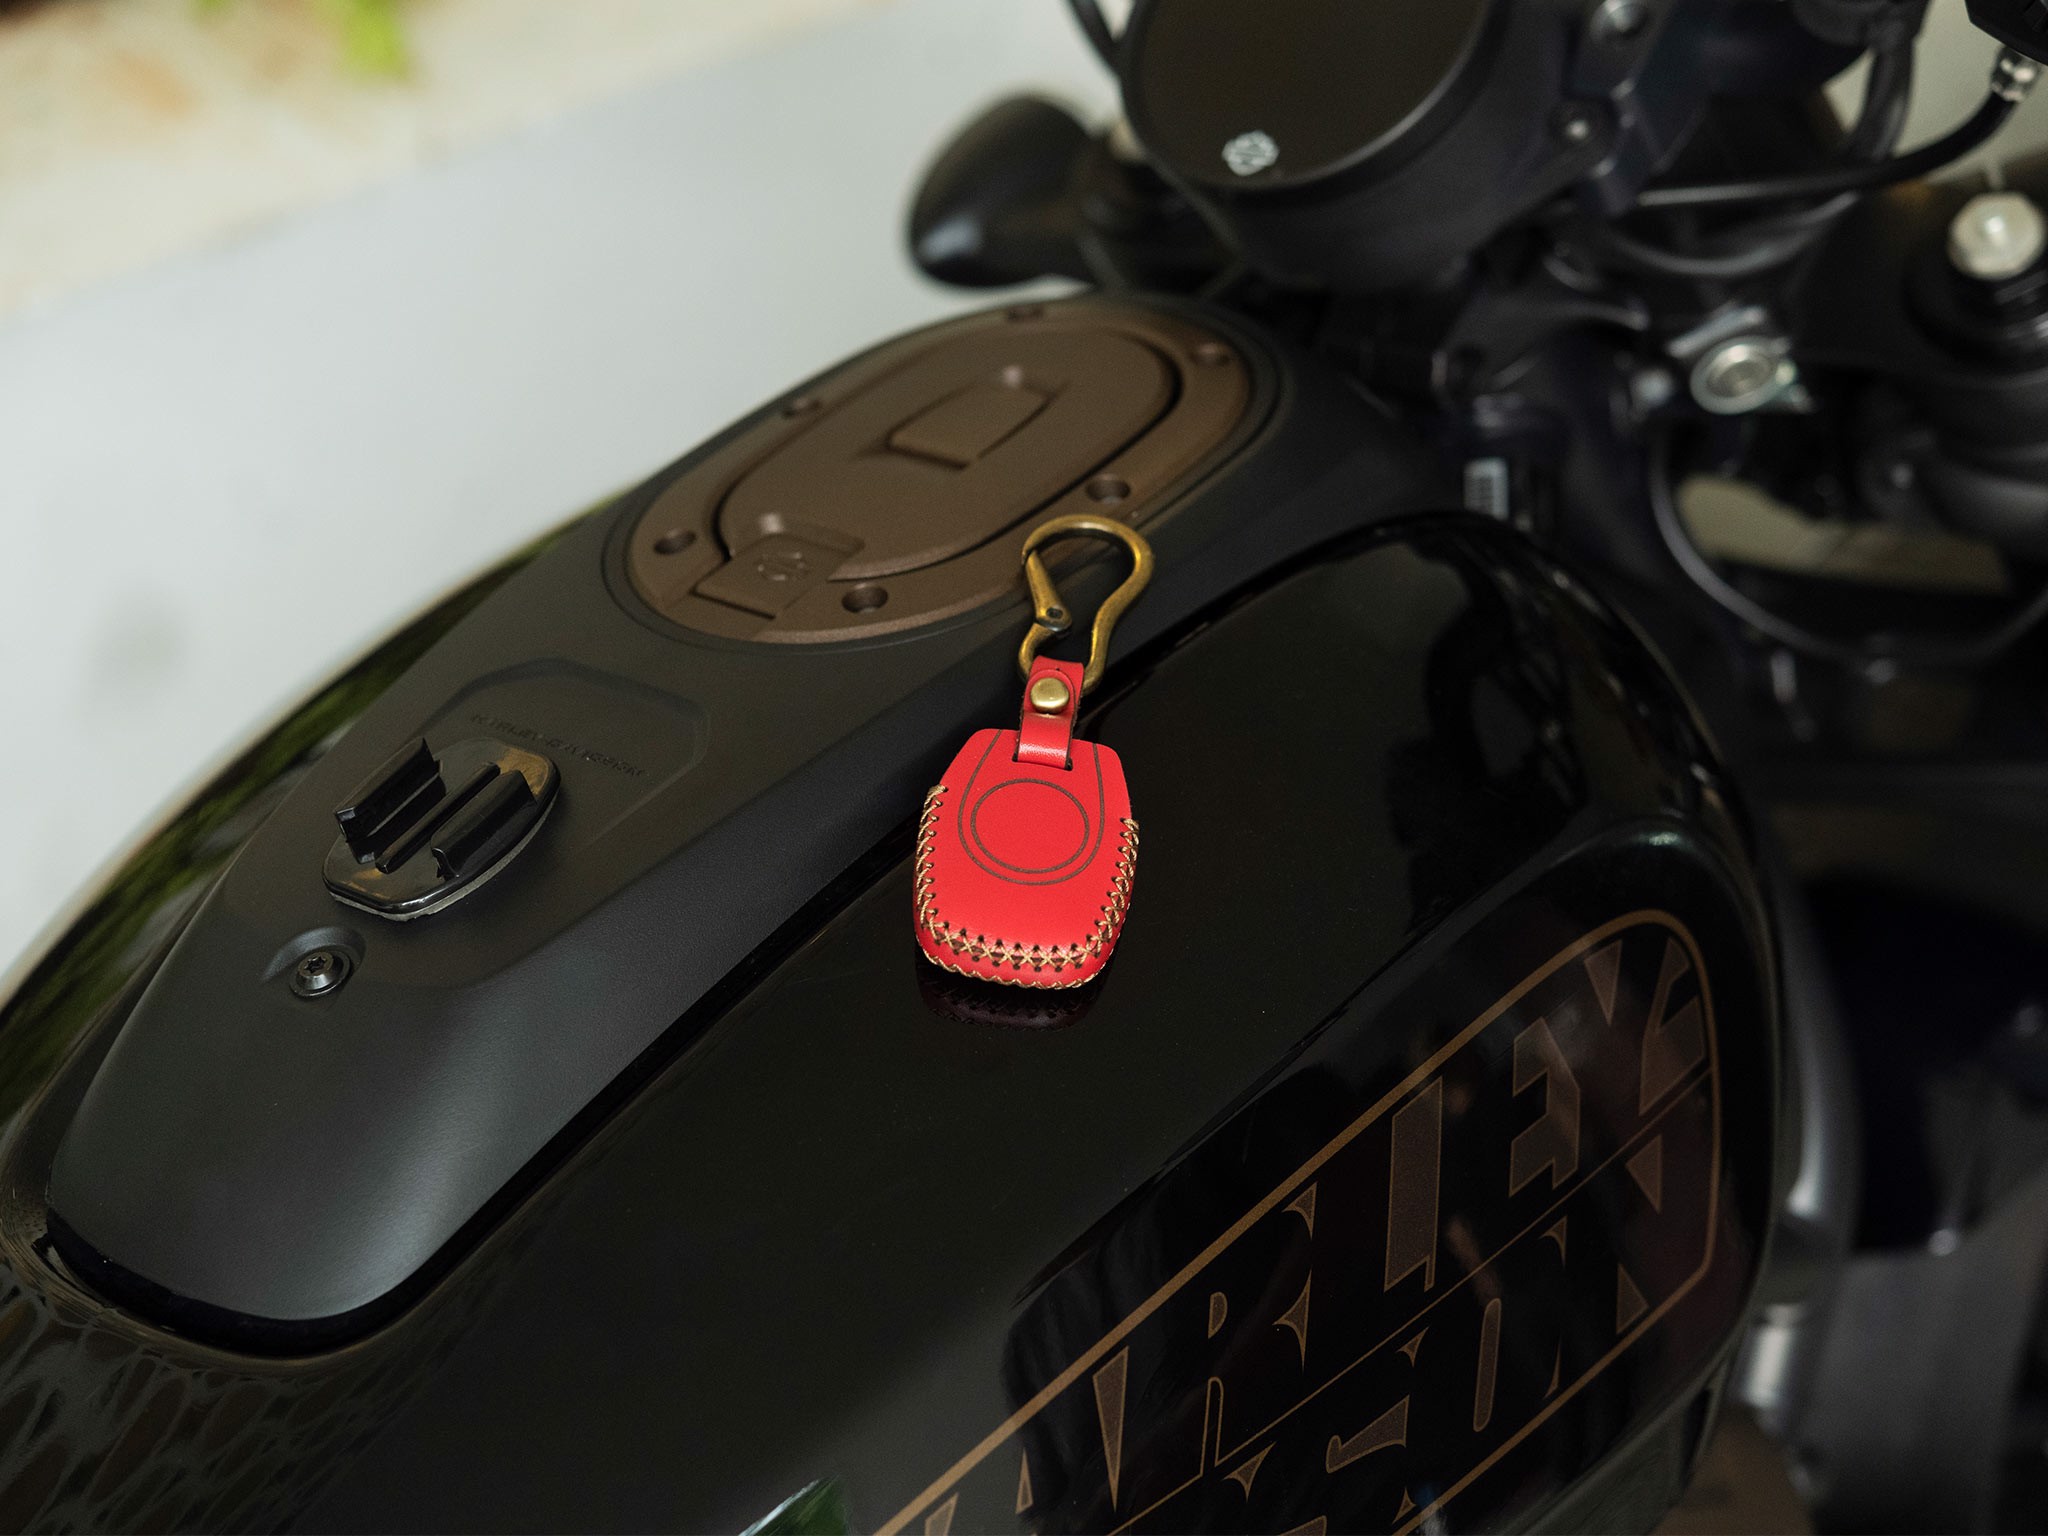 Bao da chìa khoá cho Harley Davidson Sportster S - CHÍNH HÃNG KHACTEN.COM